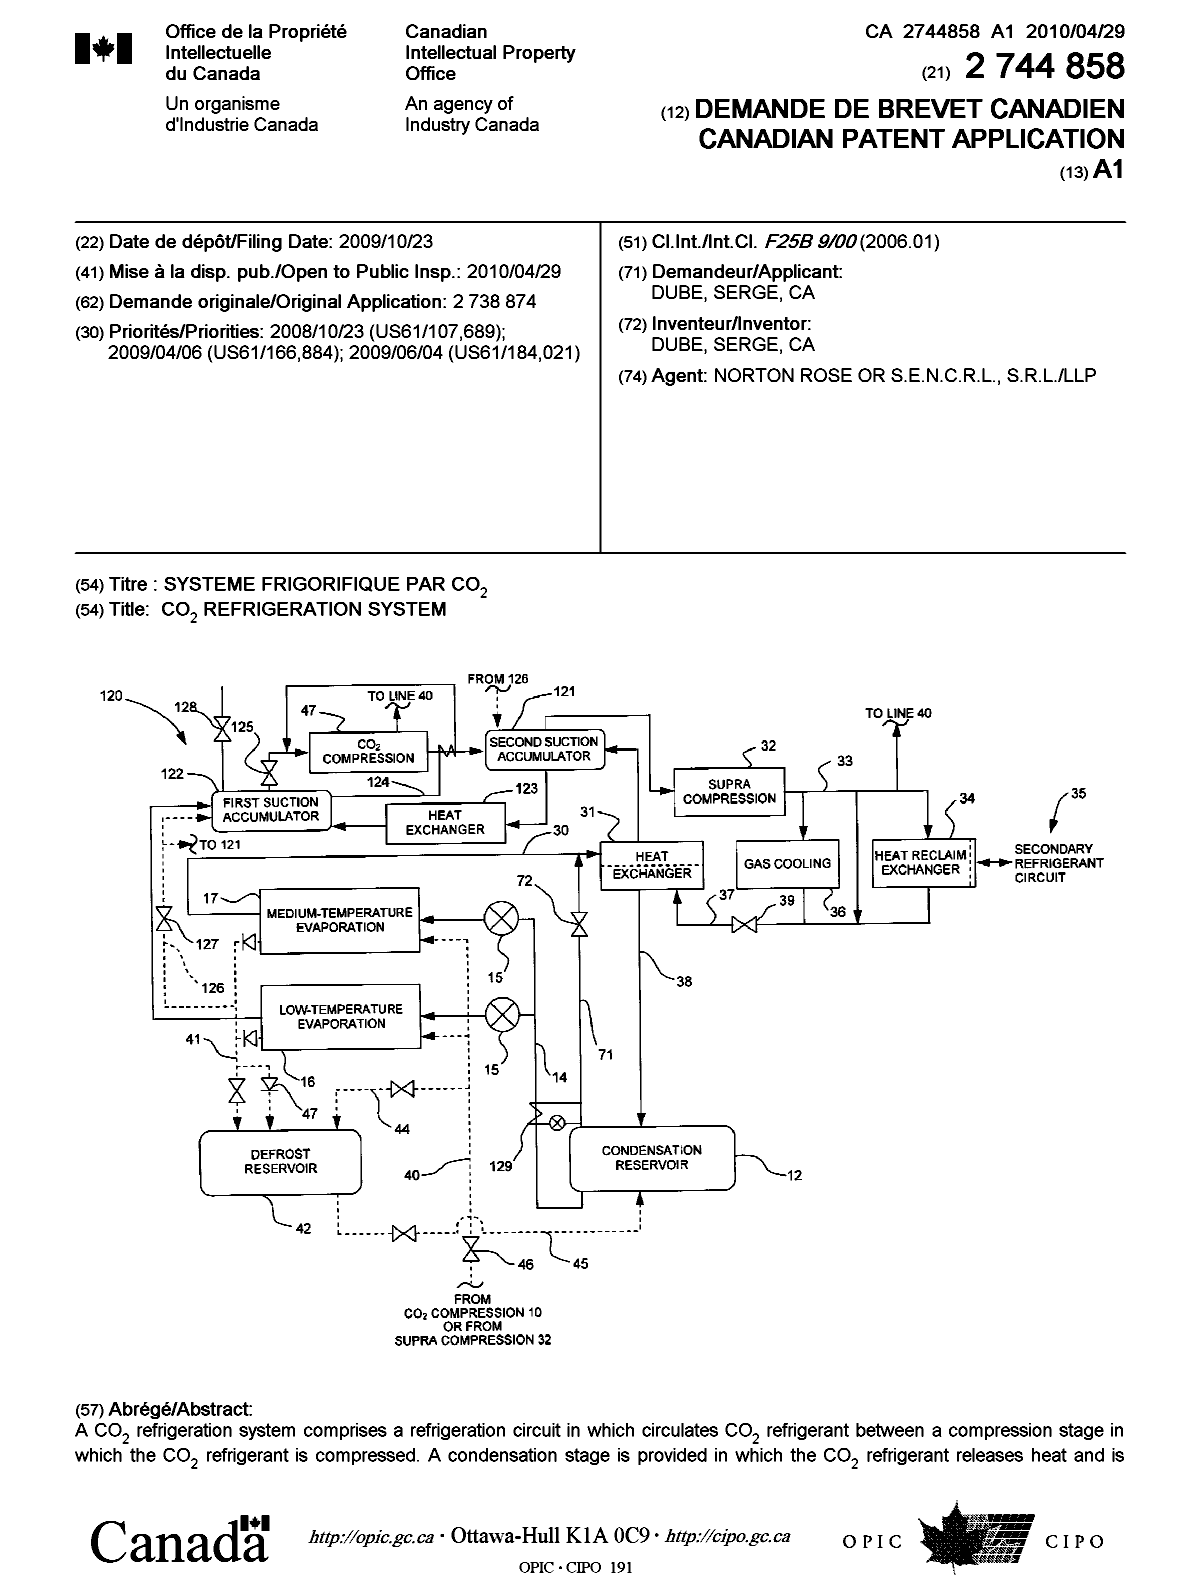 Document de brevet canadien 2744858. Page couverture 20101202. Image 1 de 2